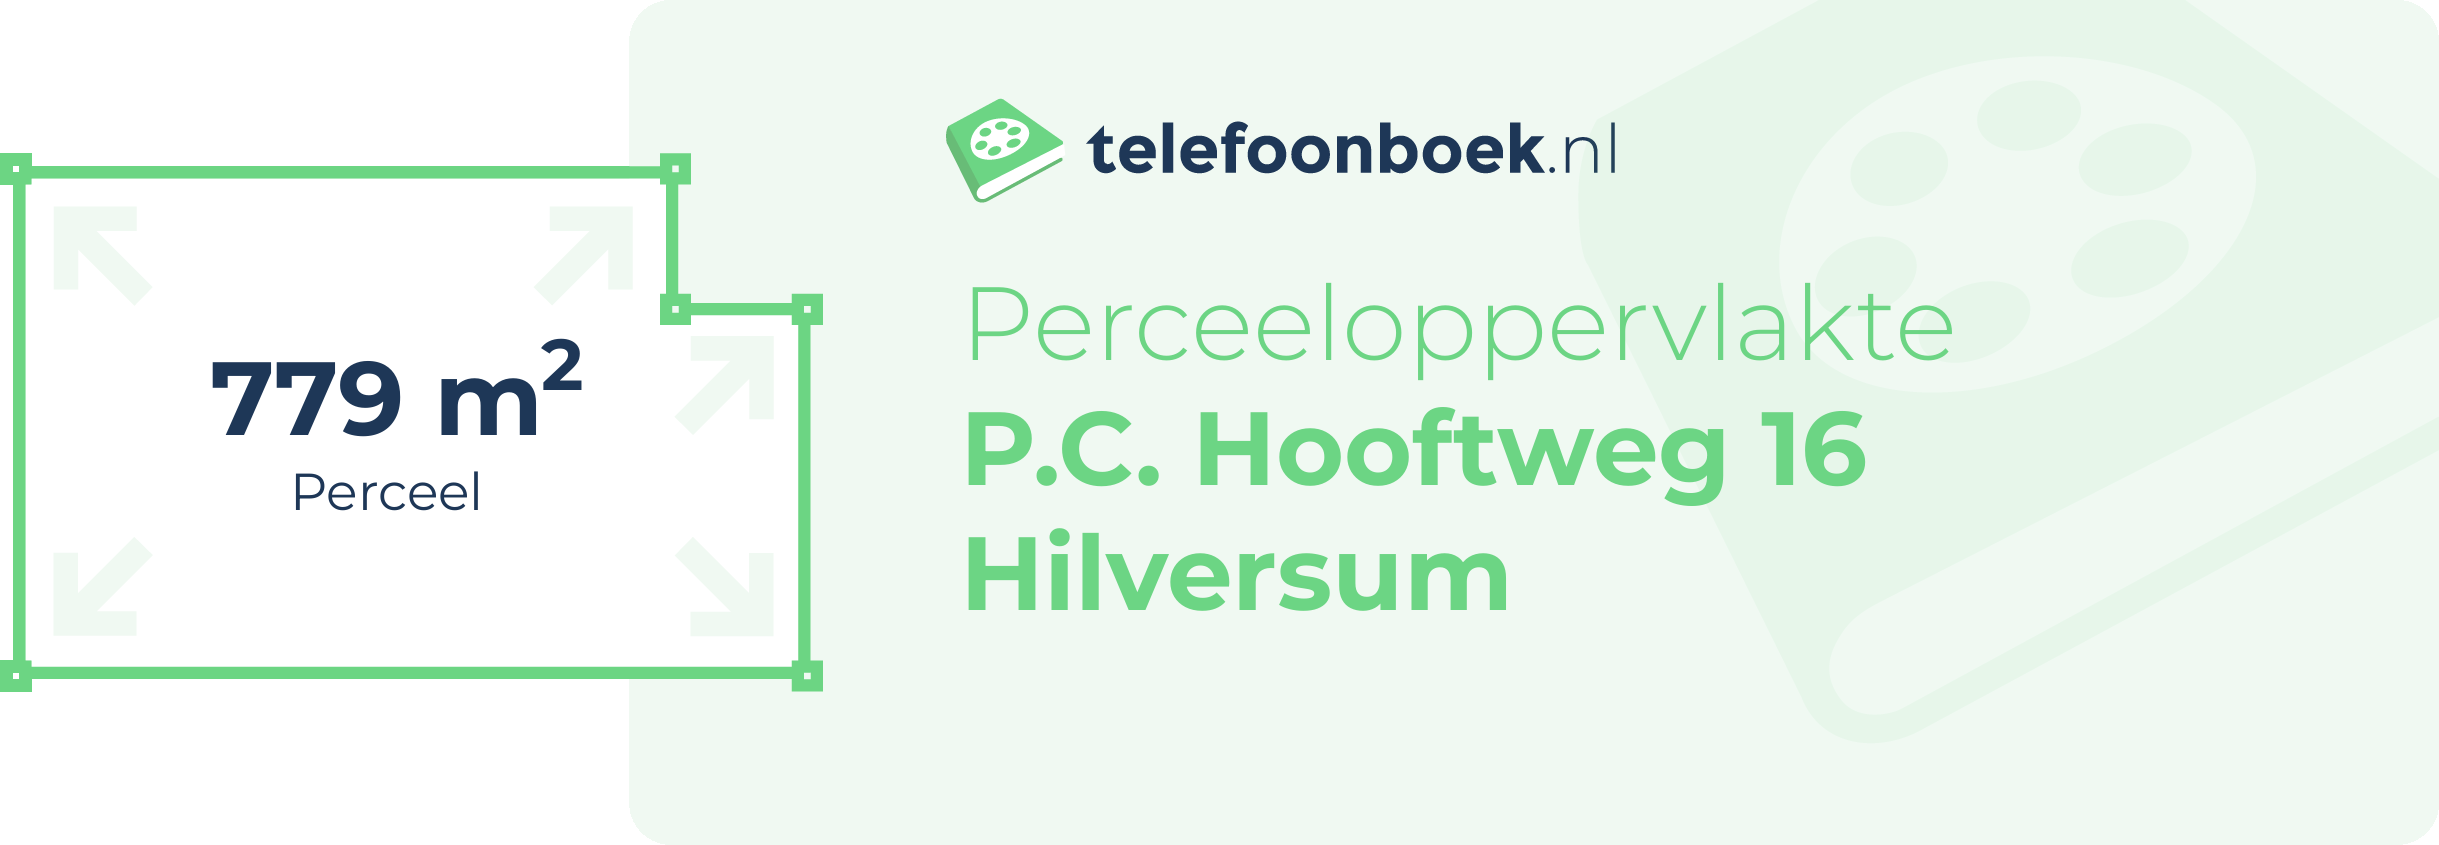 Perceeloppervlakte P.C. Hooftweg 16 Hilversum